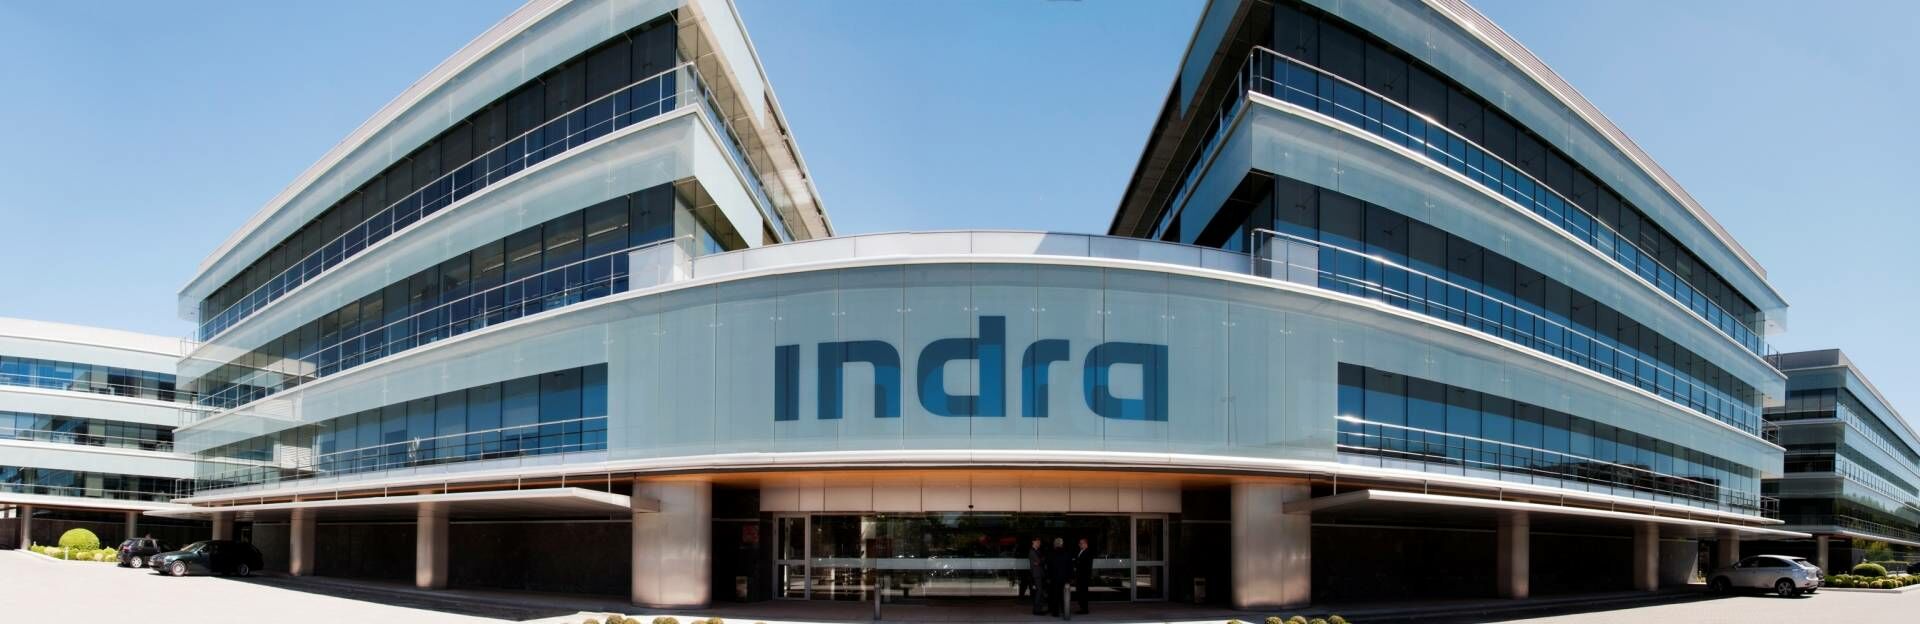 Indra se adjudica contratos del Ministerio de Justicia por 58 millones de euros